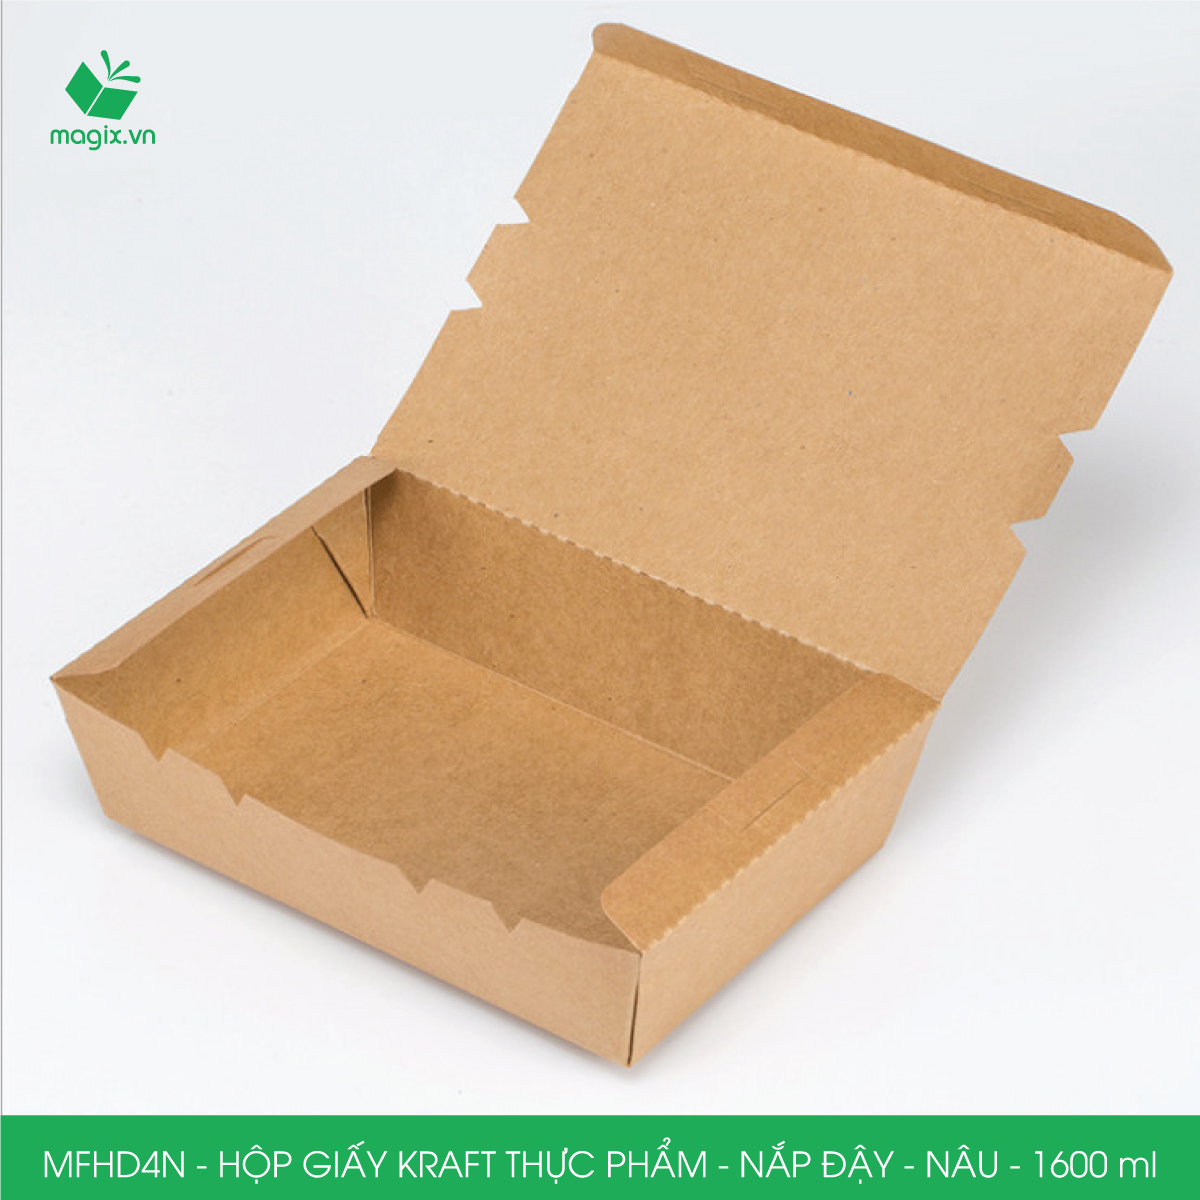 Combo 25 hộp giấy kraft thực phẩm, hộp đựng thức ăn nắp đậy màu nâu, hộp gói đồ ăn mang đi